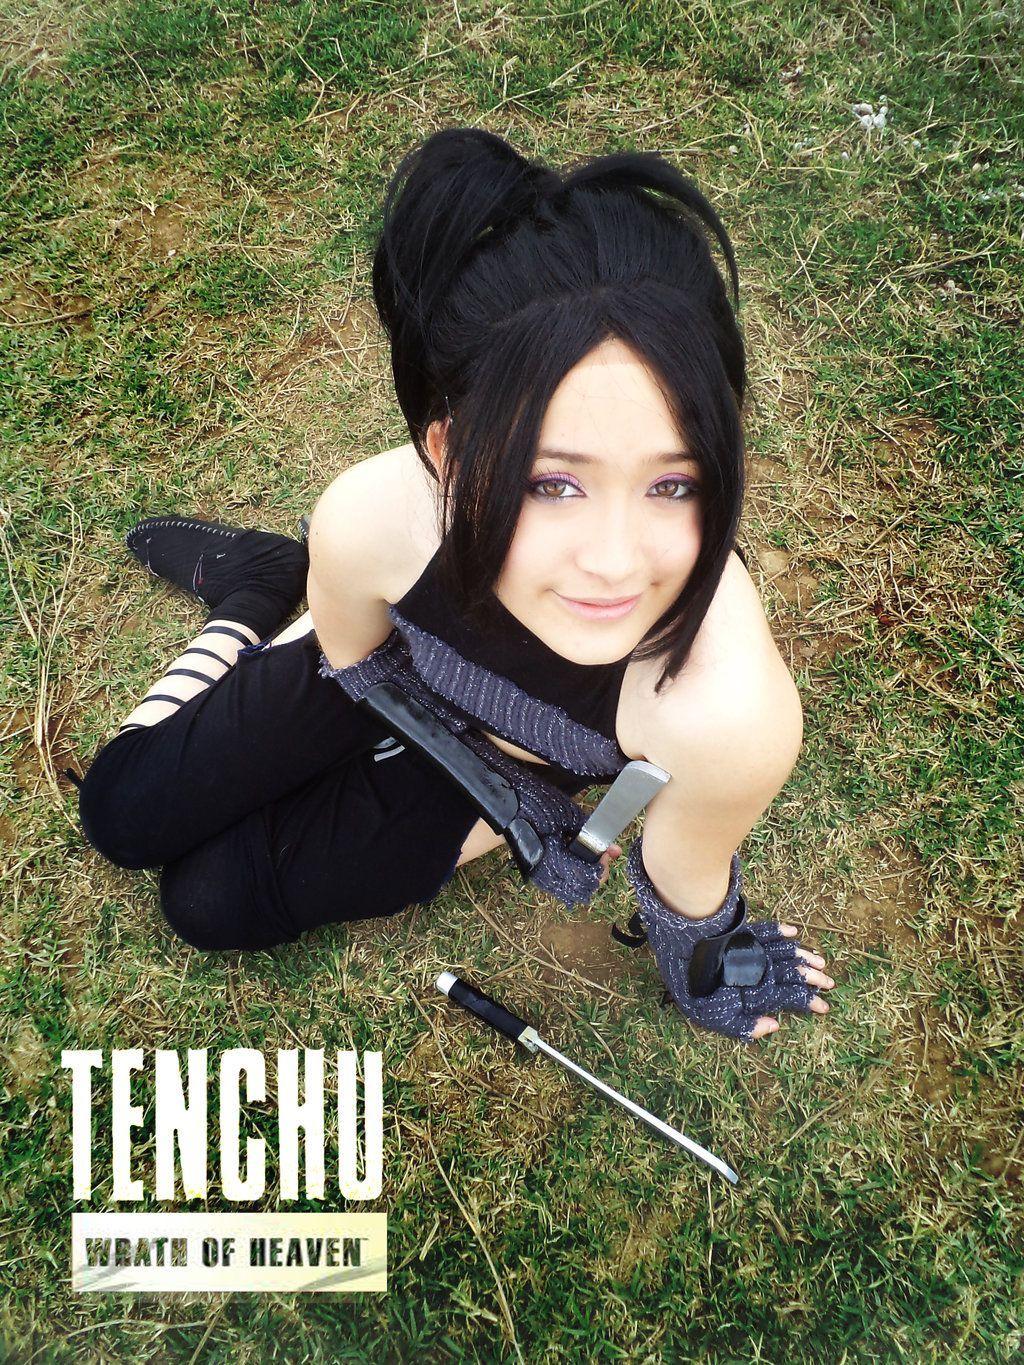 Tenchu Ayame Cosplay. kunoichi. Cosplay and Otaku